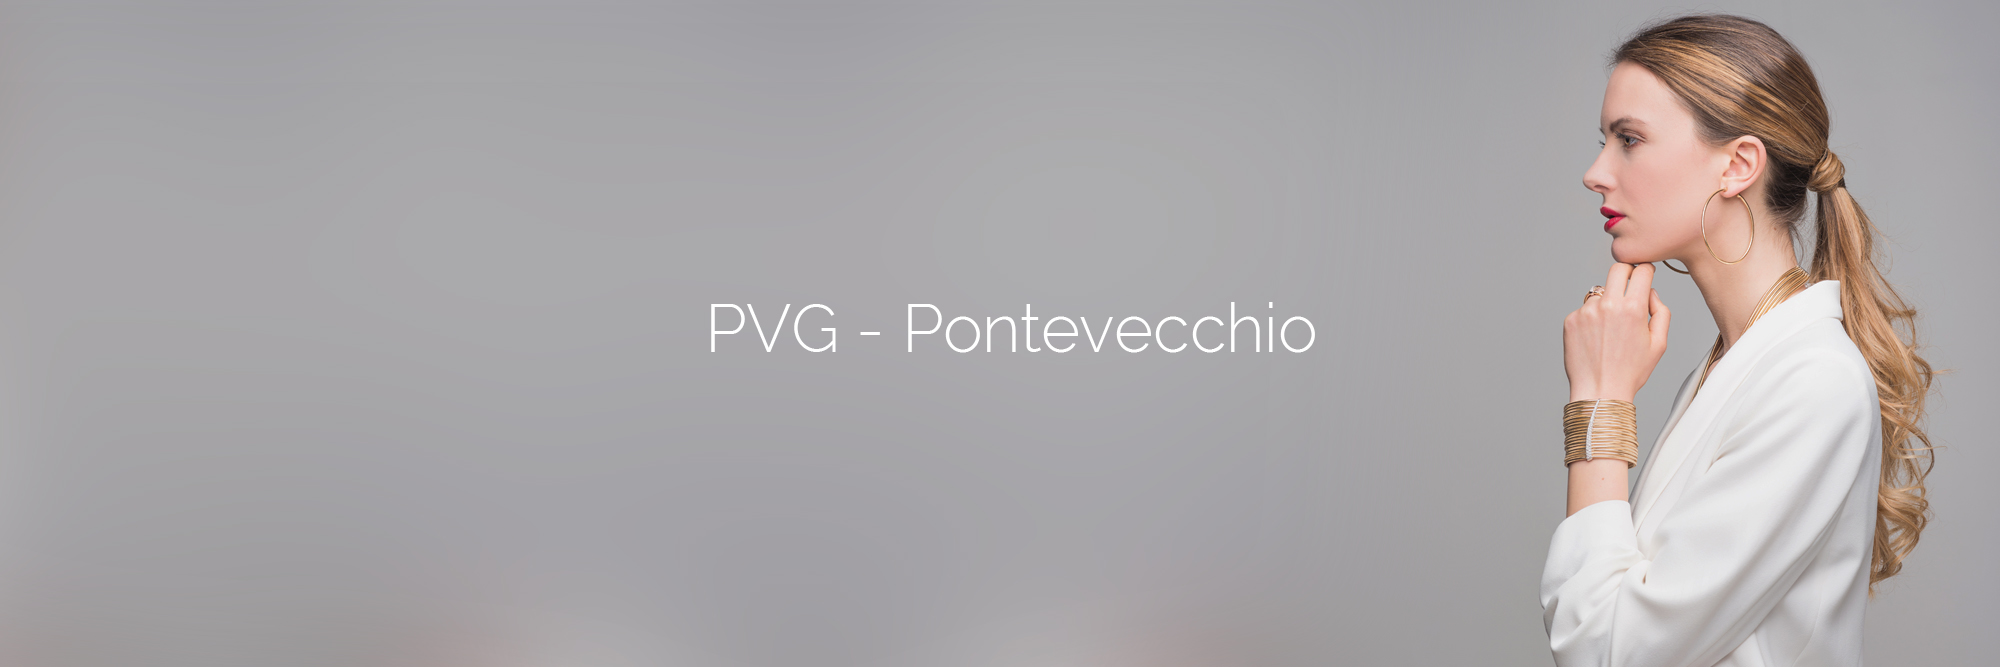 PVG - Servizio fotografico editoriale